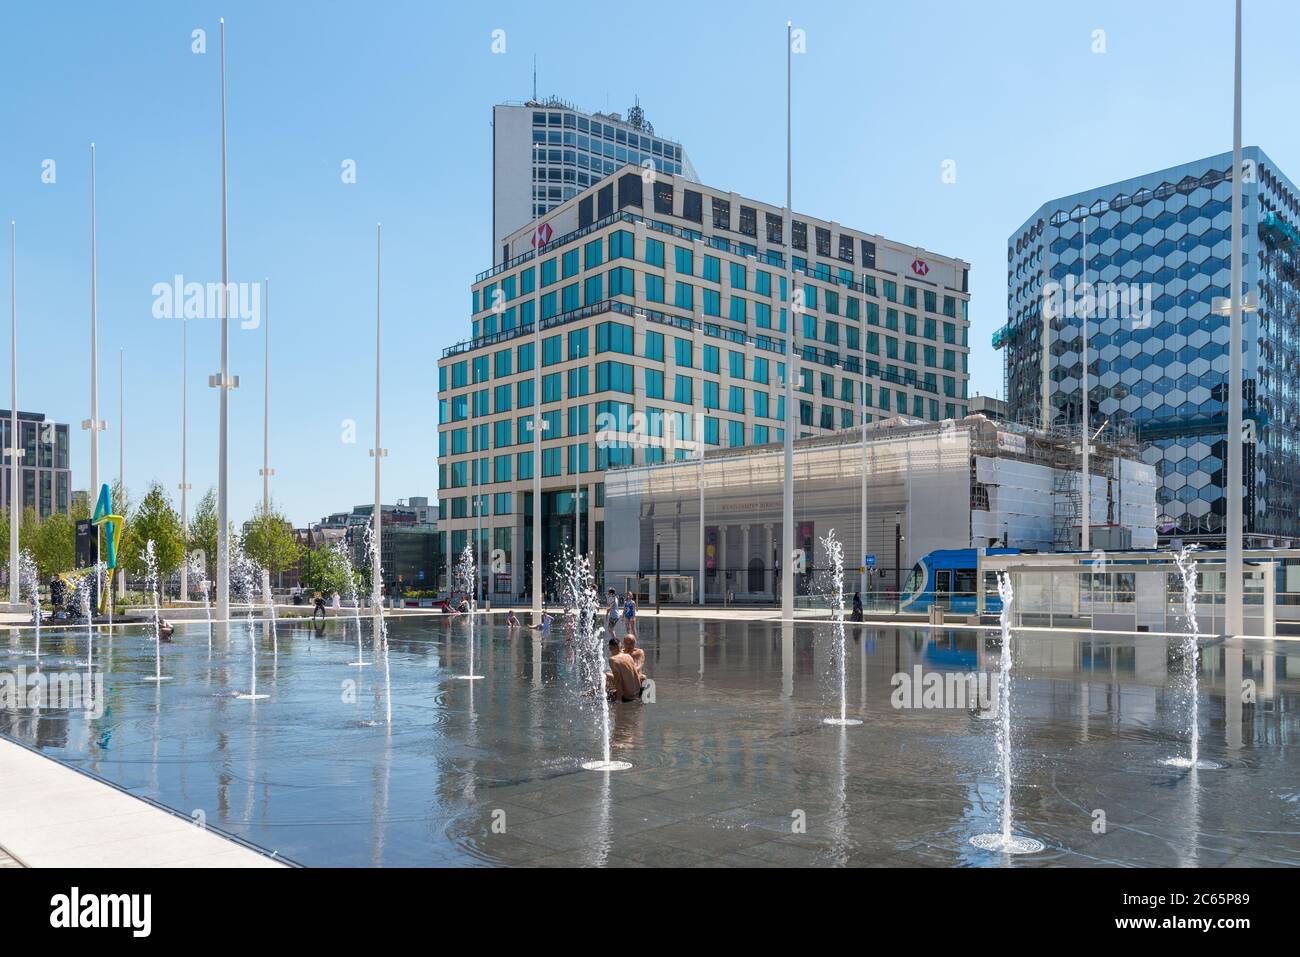 Menschen, die sich in den Wasserfontänen im Wasserspiegel am Centenary Square, Birmingham, Großbritannien, abkühlen Stockfoto